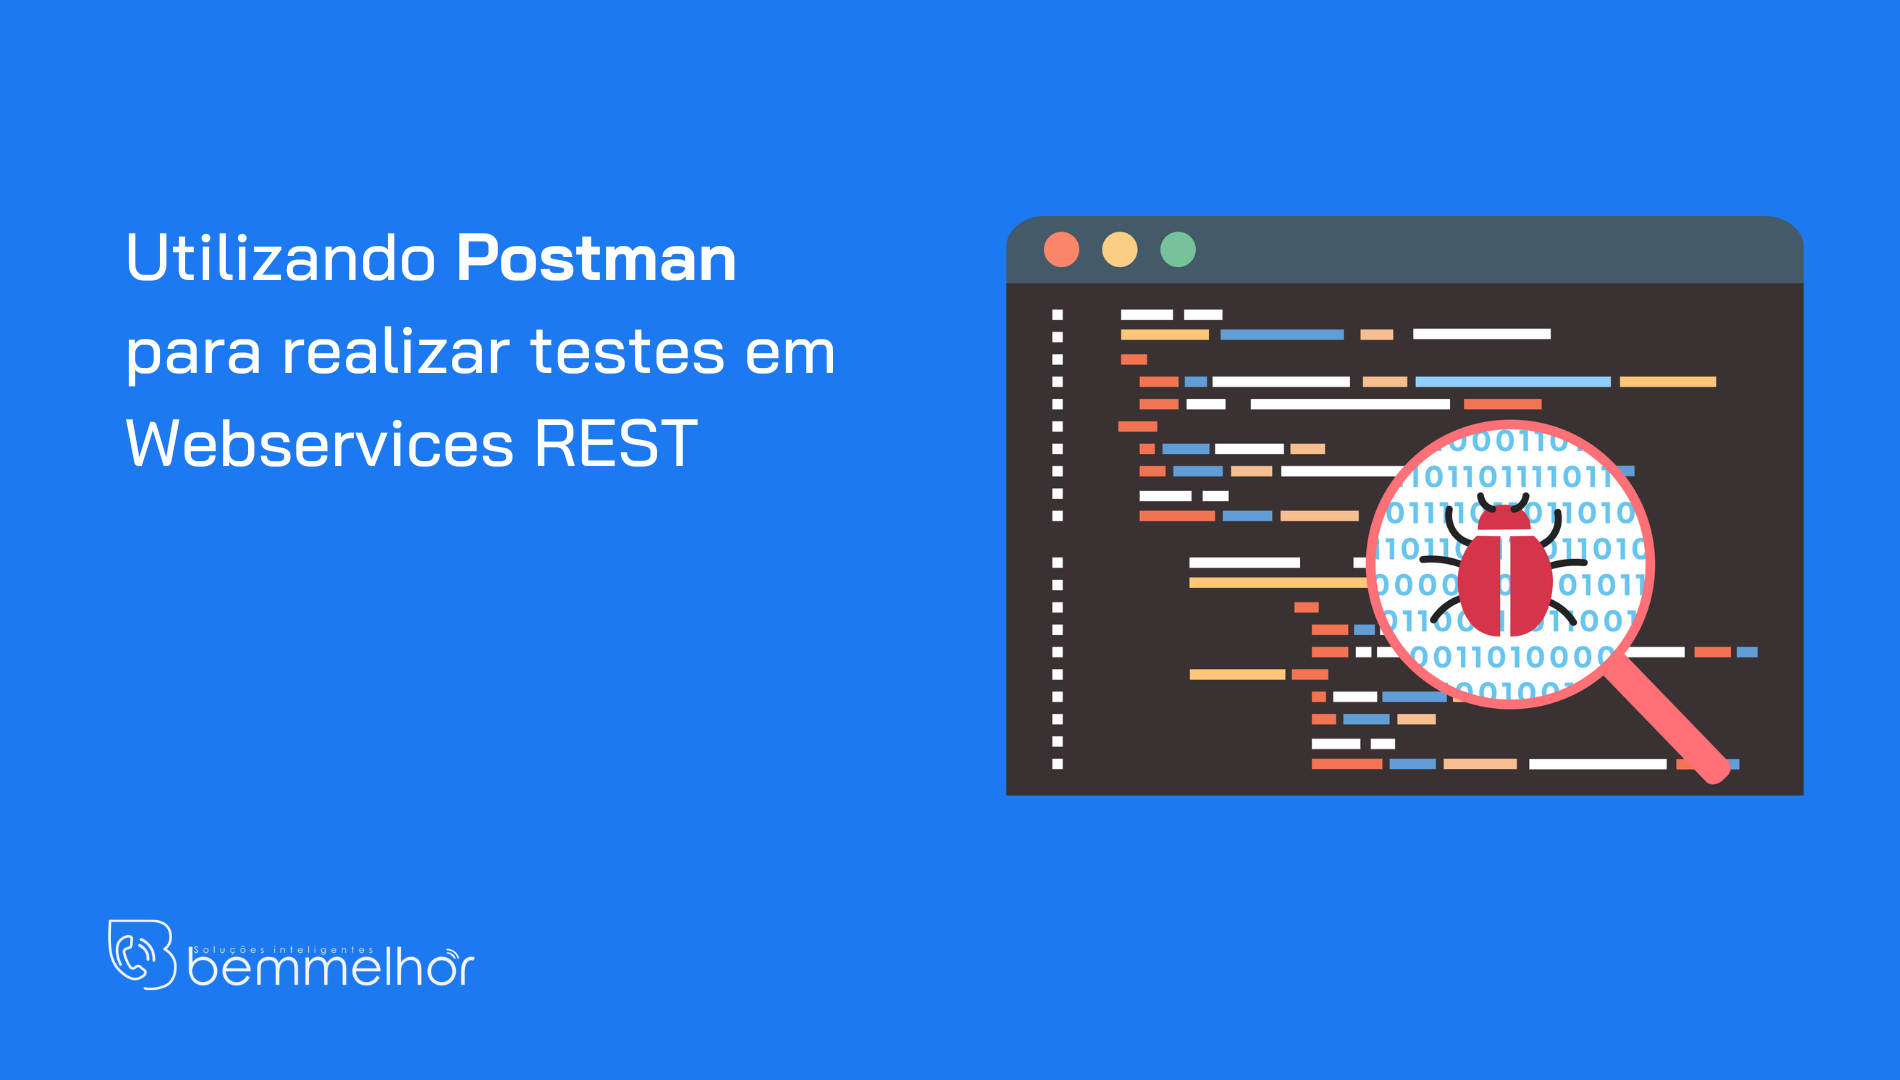 Utilizando Postman para realizar testes em Webservices REST